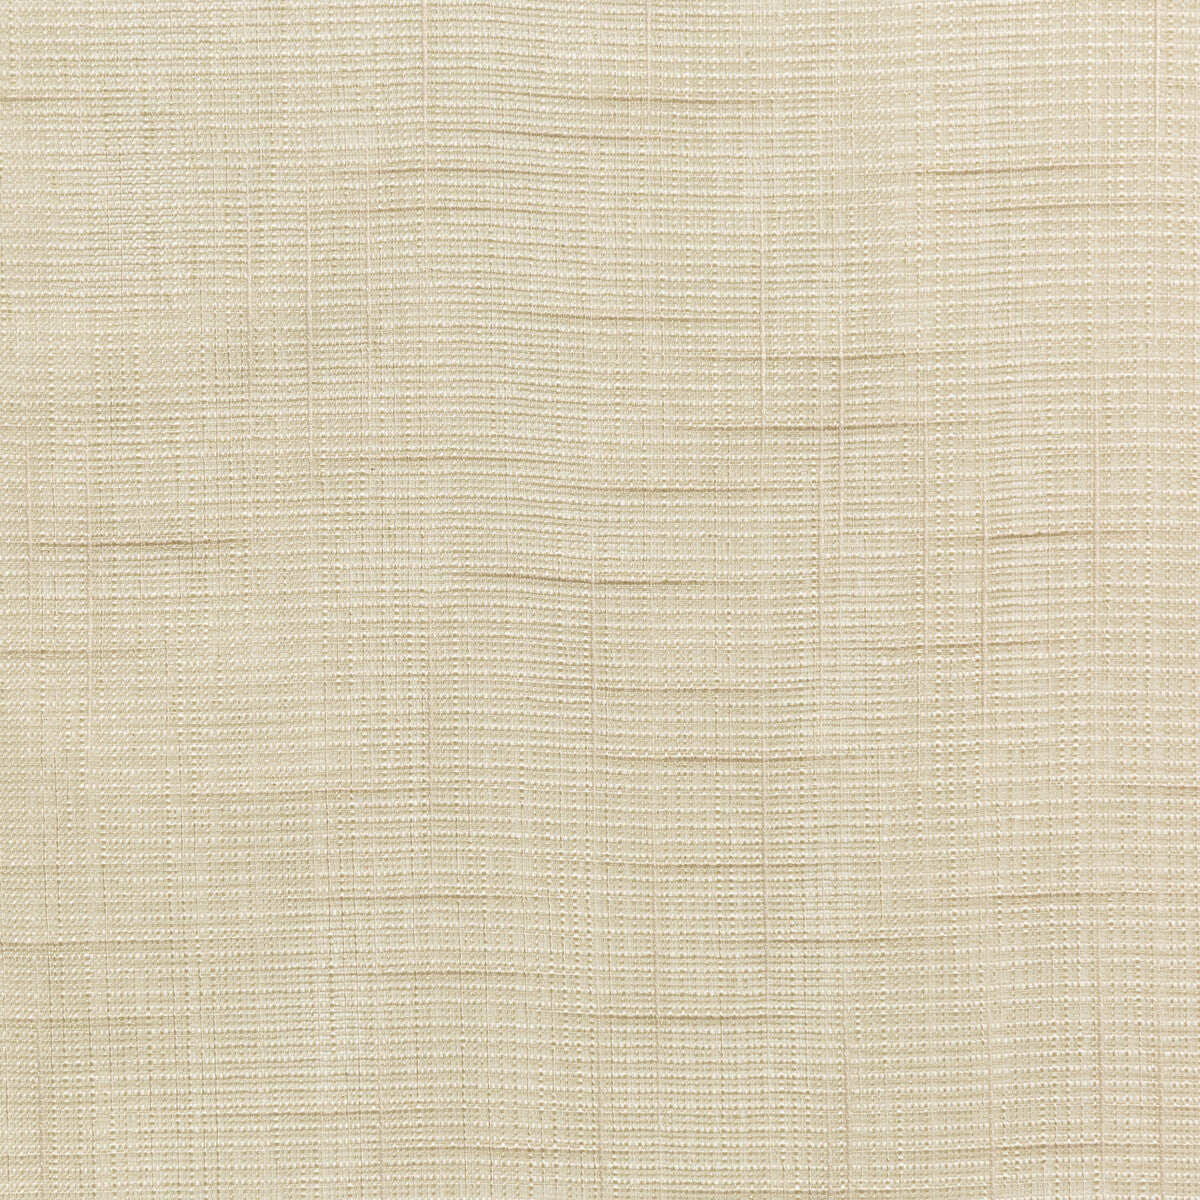 Kravet Basics fabric in 4725-16 color - pattern 4725.16.0 - by Kravet Basics